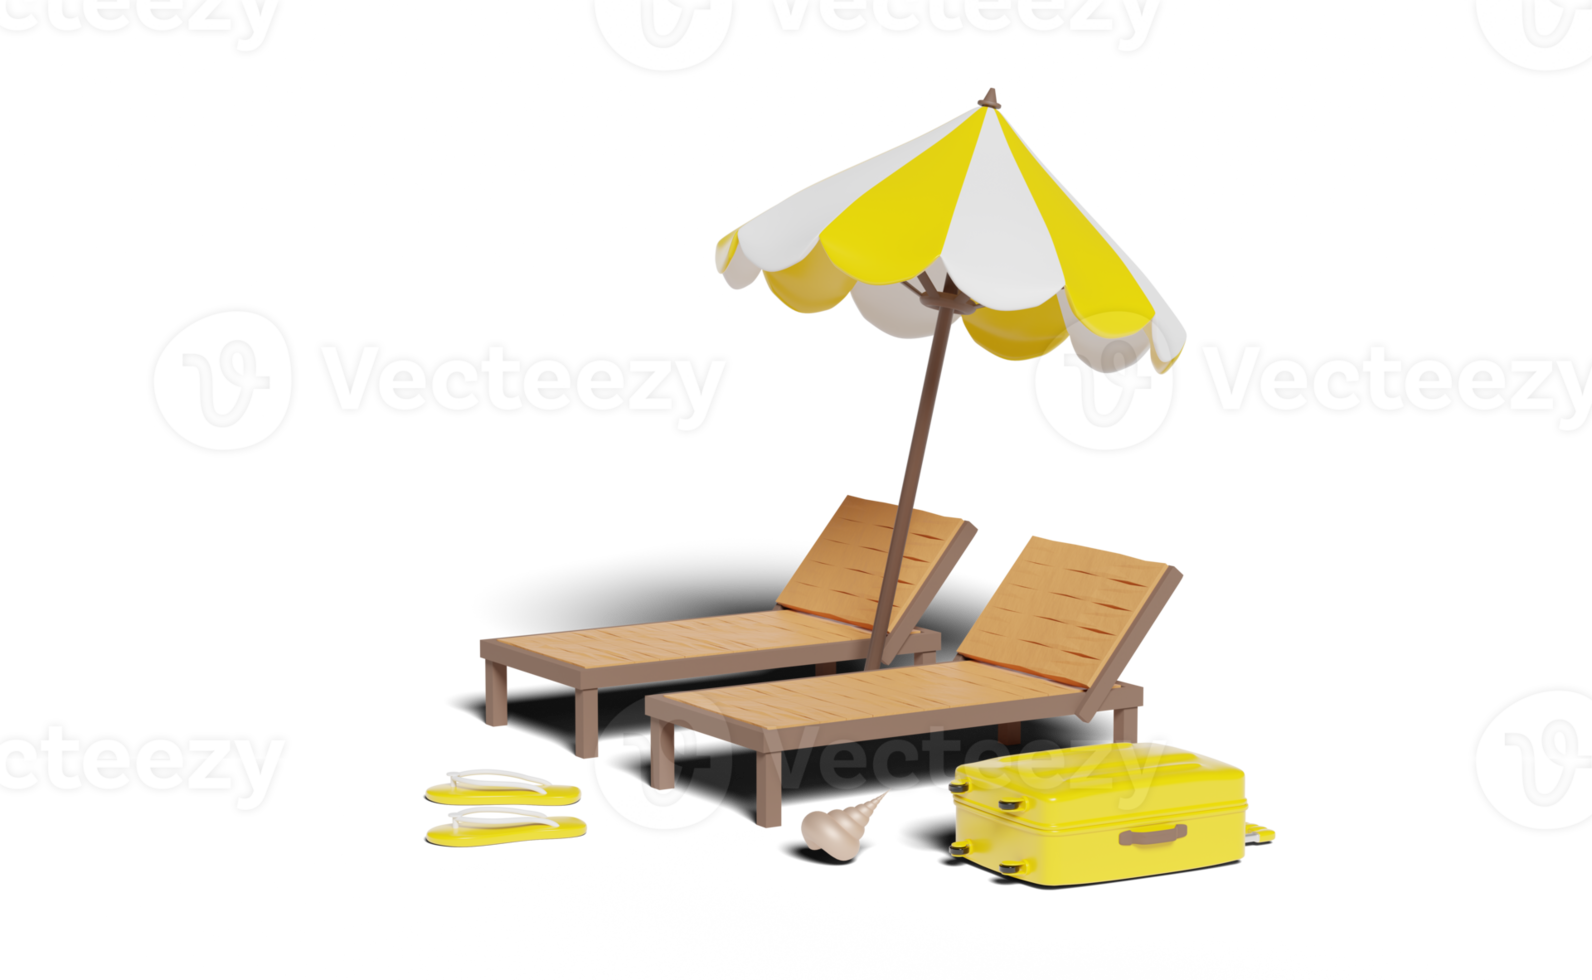 viagem de verão 3d com mala amarela, cadeira de praia, guarda-chuva png